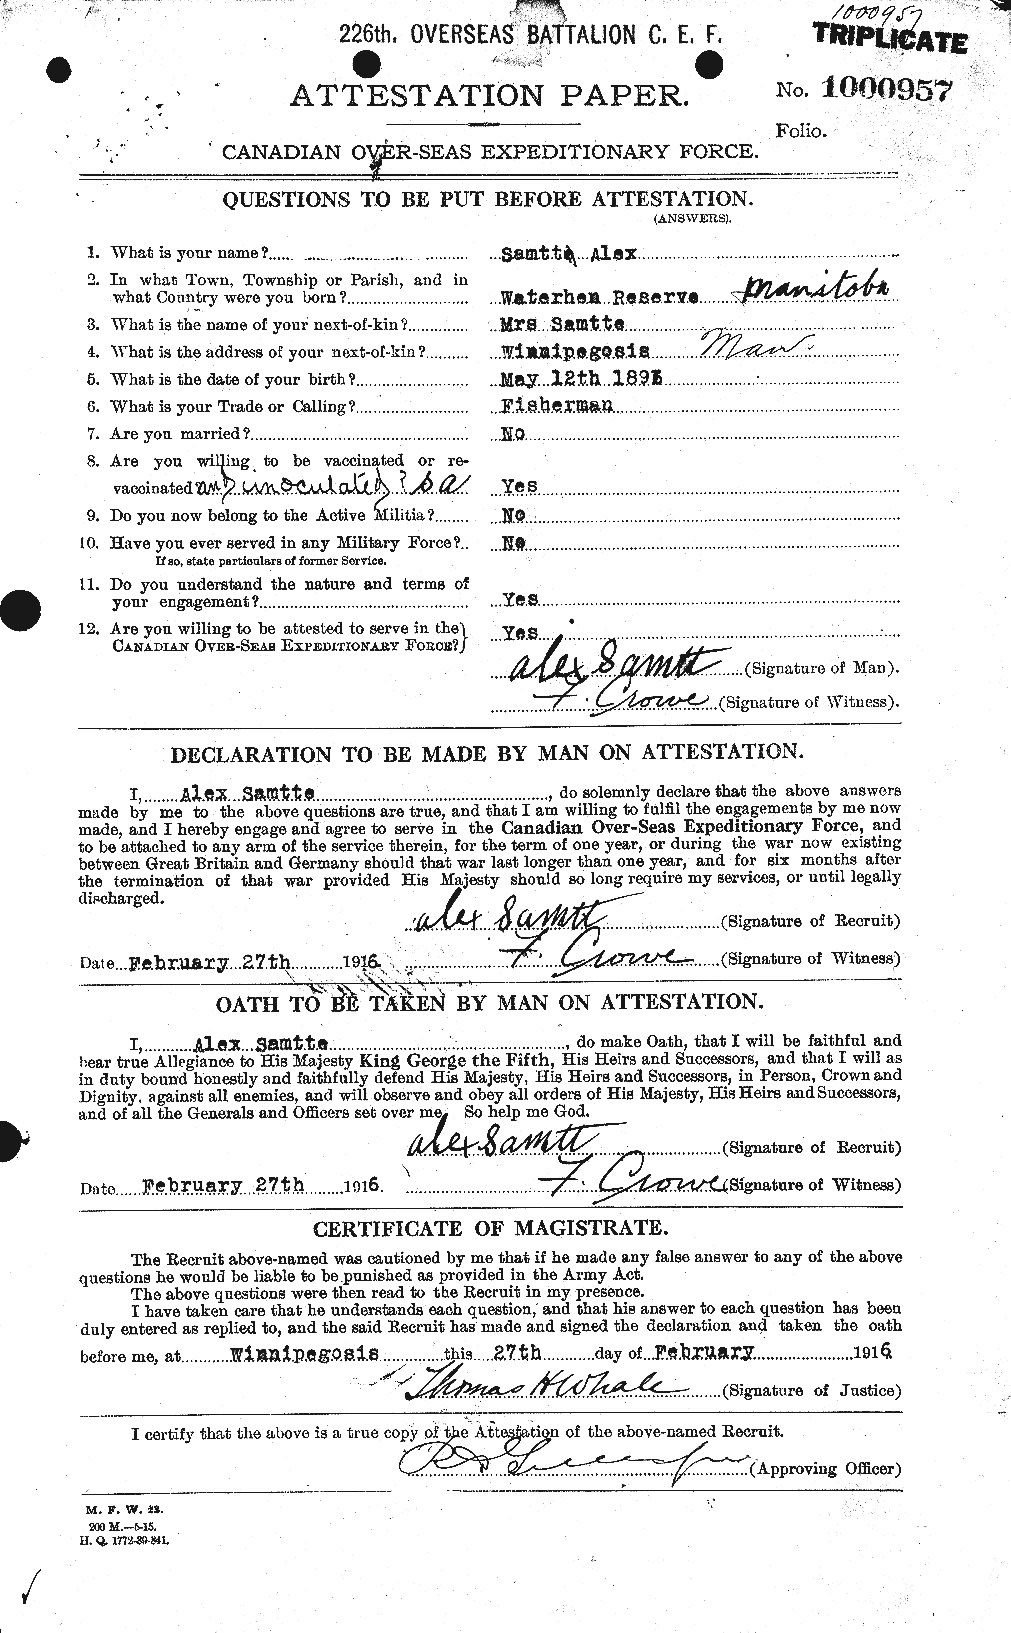 Dossiers du Personnel de la Première Guerre mondiale - CEC 076234a